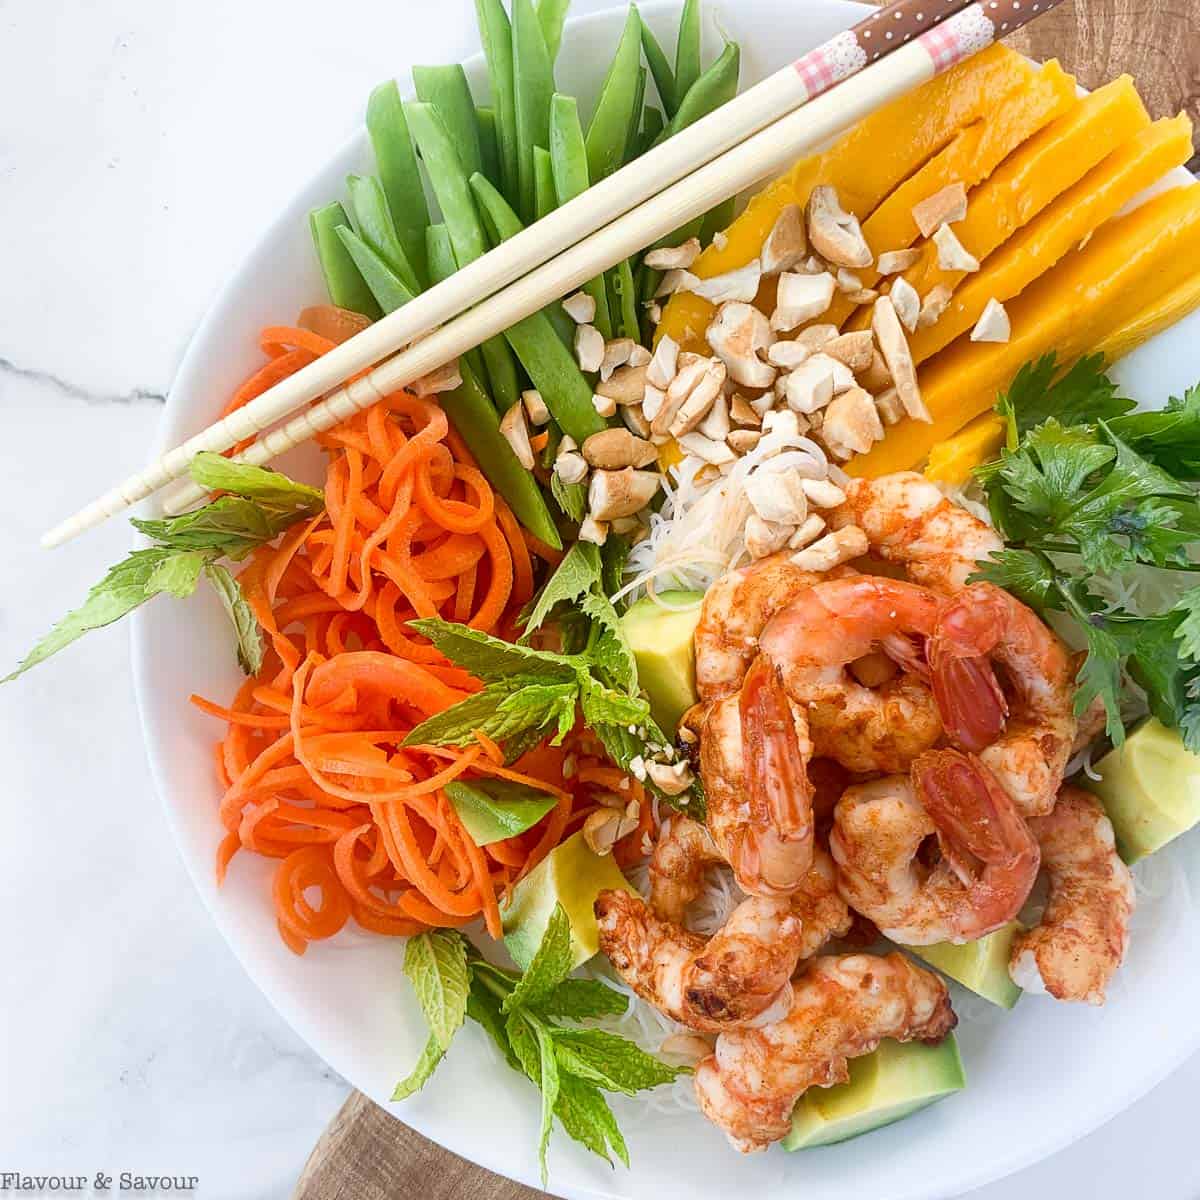 Restaurant-style Vietnamese Noodle Bowl